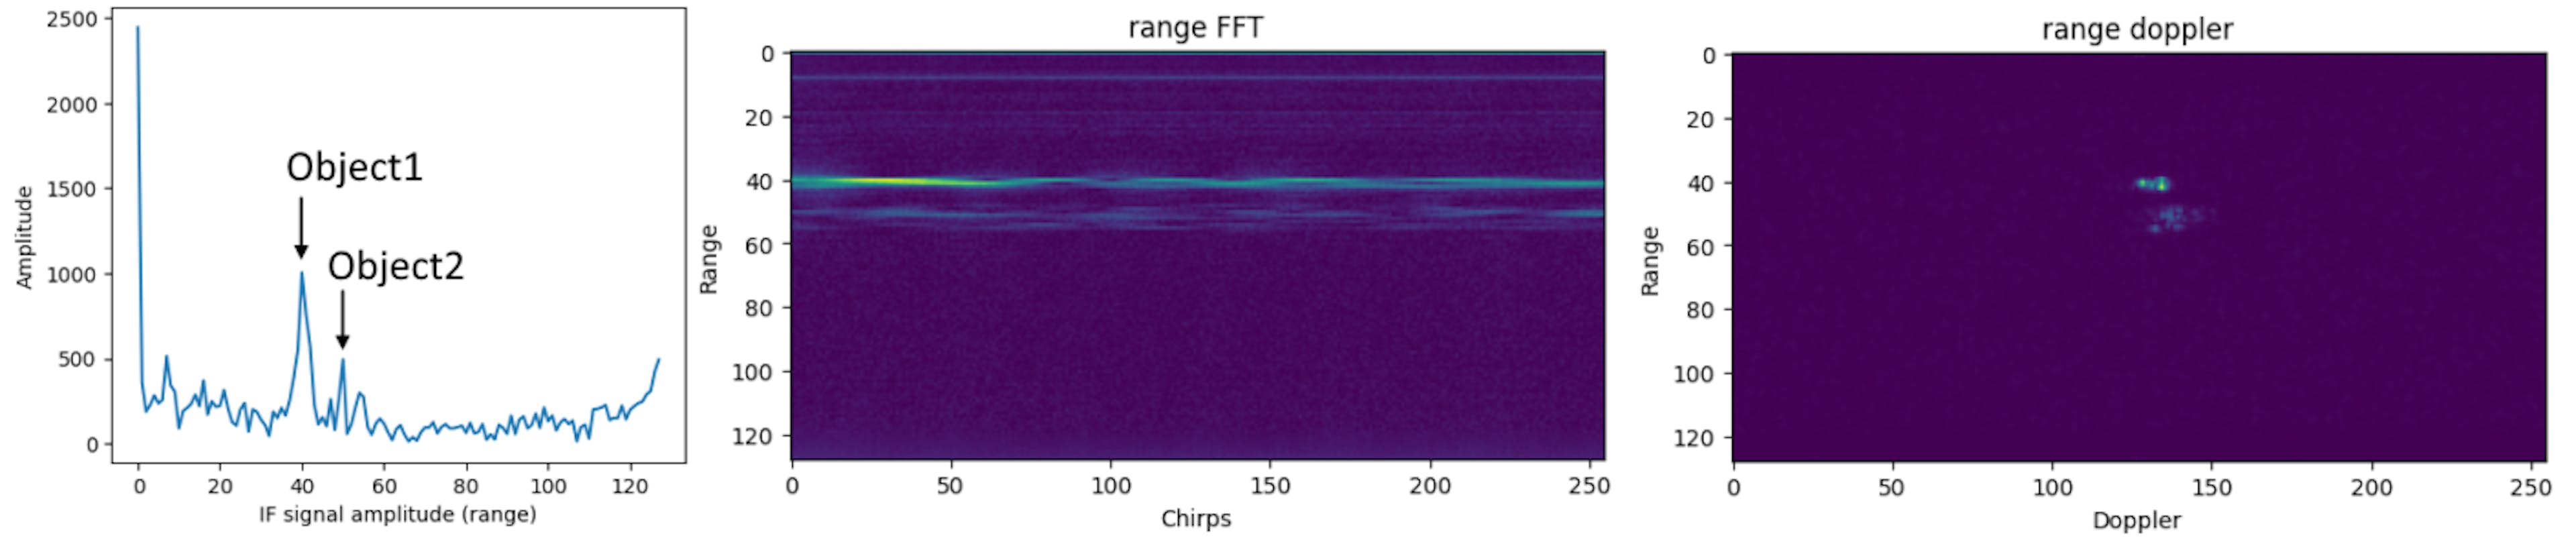 Von links nach rechts: IF-Signal eines einzelnen Chirps nach Fourier-Transformation (Range-Fourier-Transformation), Radarbild nach Range-Fourier-Transformation, Range-Doppler-Bild. Die Werte der „Pixel“ in einem Range-Doppler-Bild sind die Amplitudenantwort und Phase bei einer bestimmten Geschwindigkeit und Entfernung.